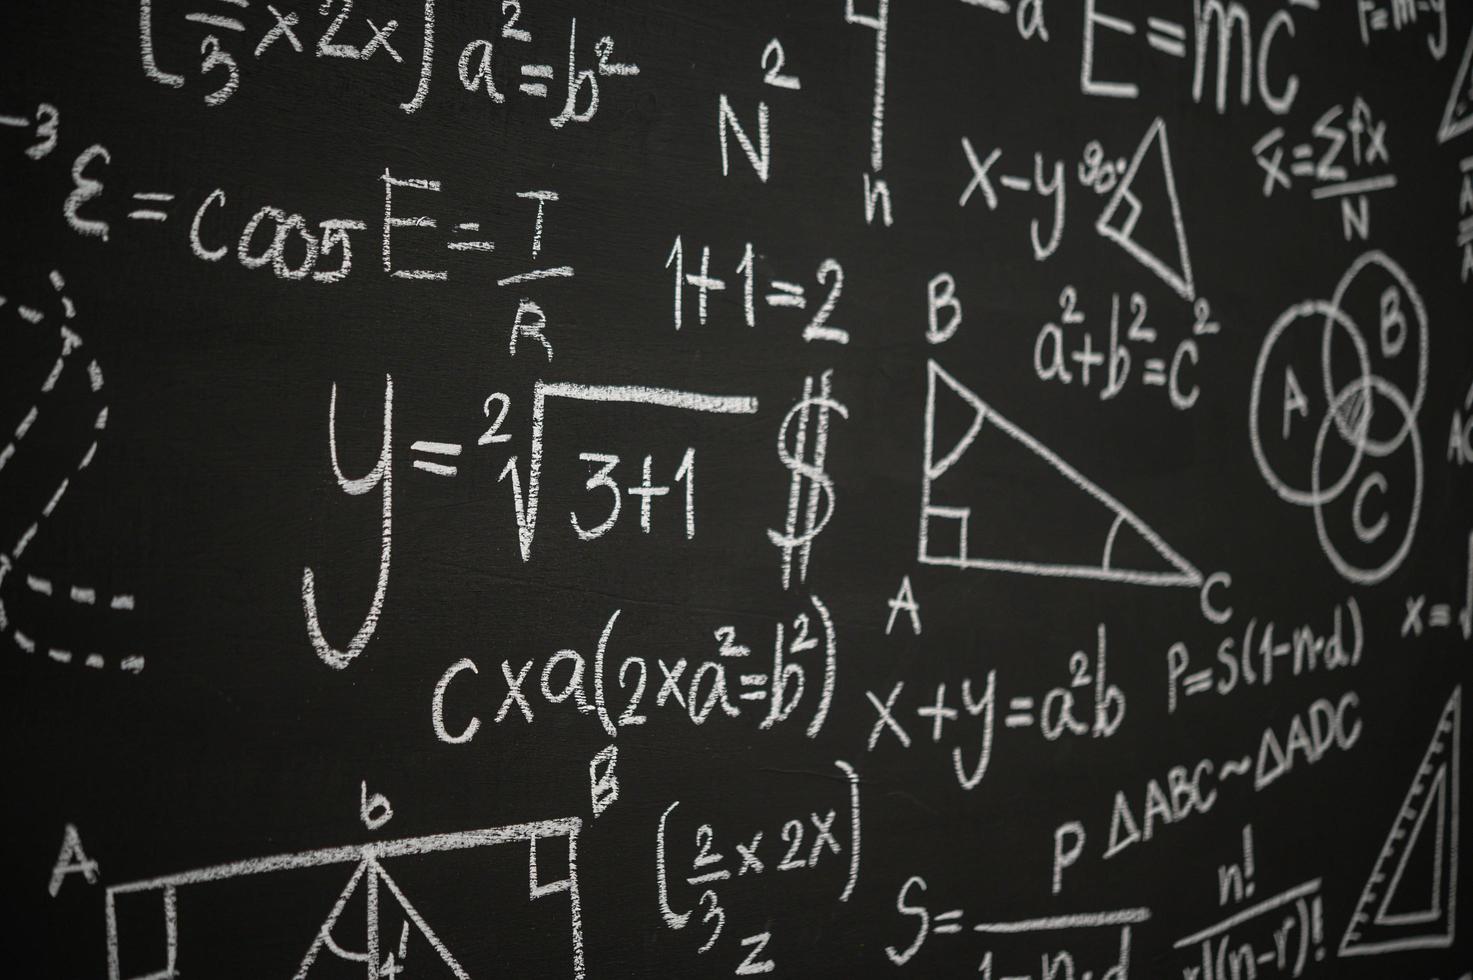 Tafel mit wissenschaftlichen Formeln und Berechnungen beschriftet foto